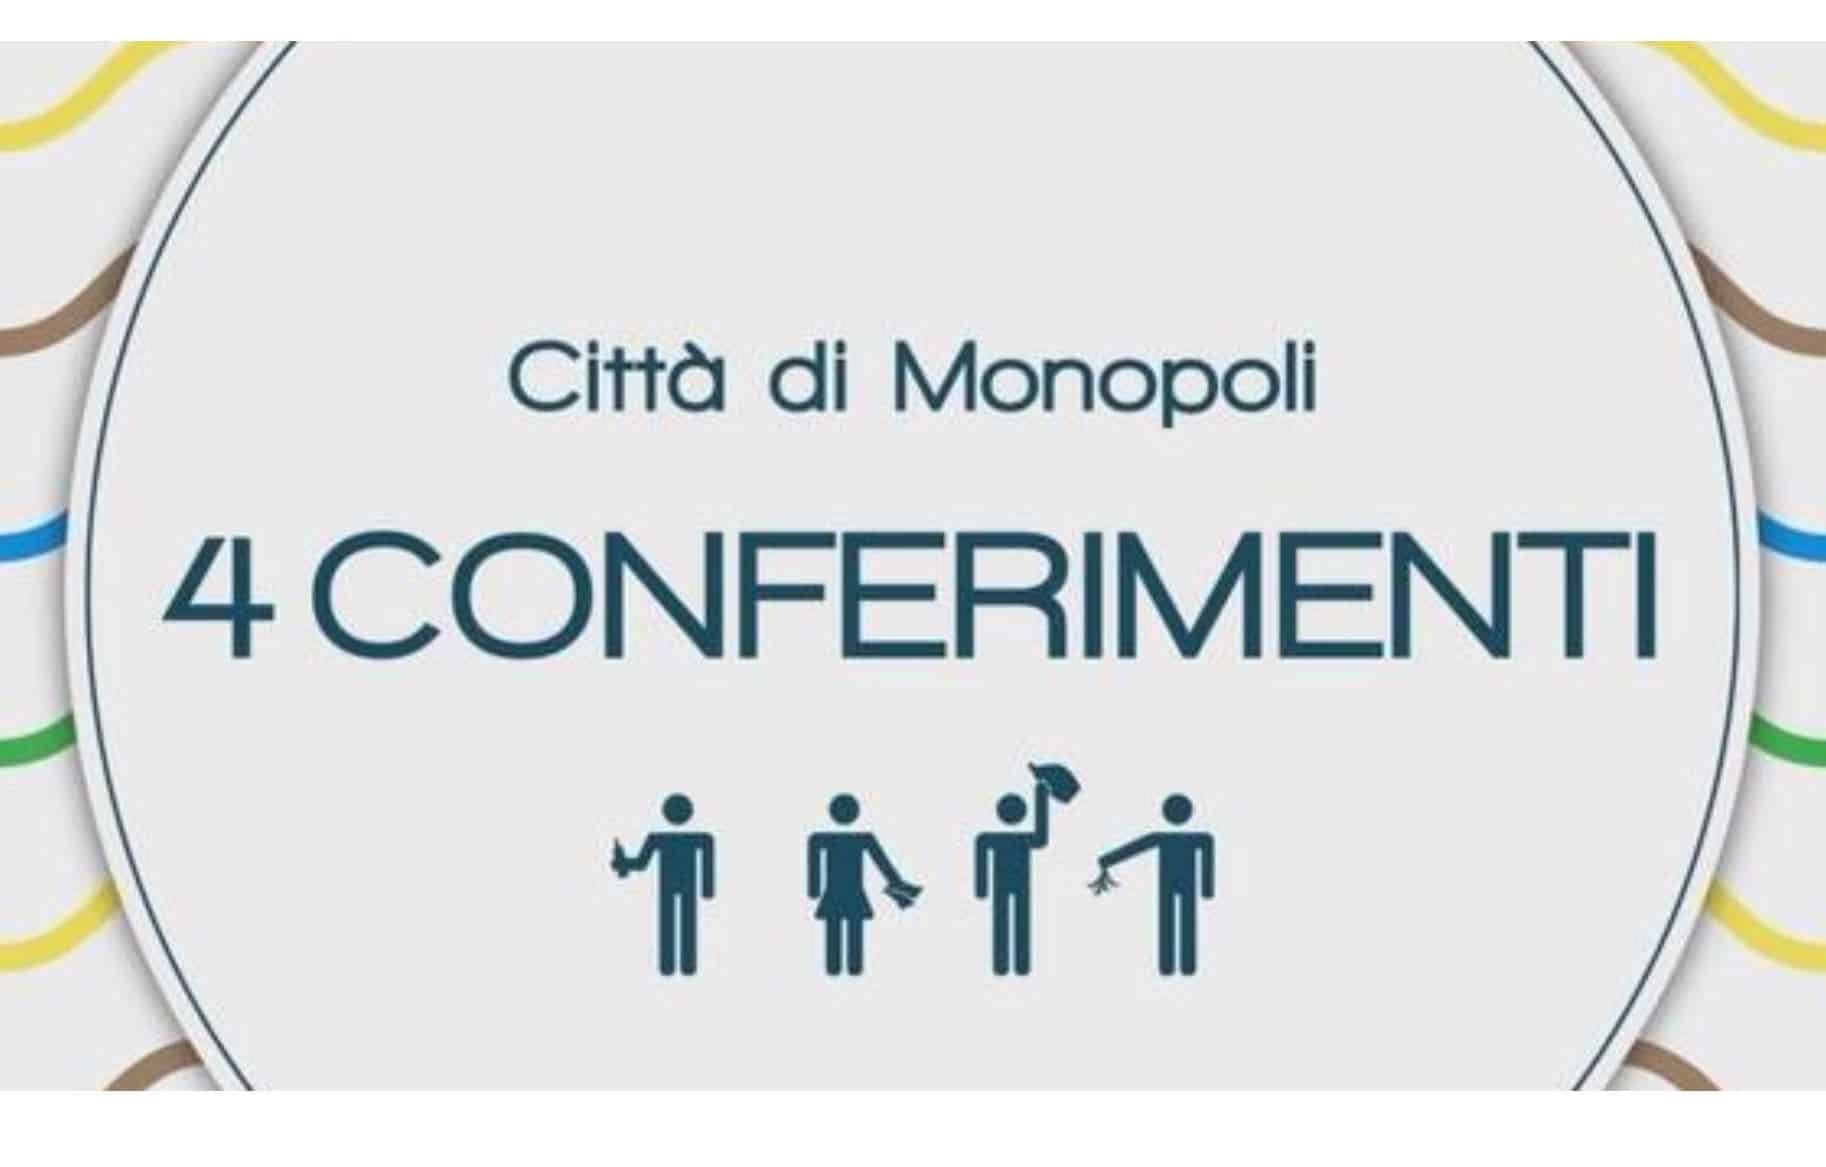 See image of Monopoli 4 conferimenti